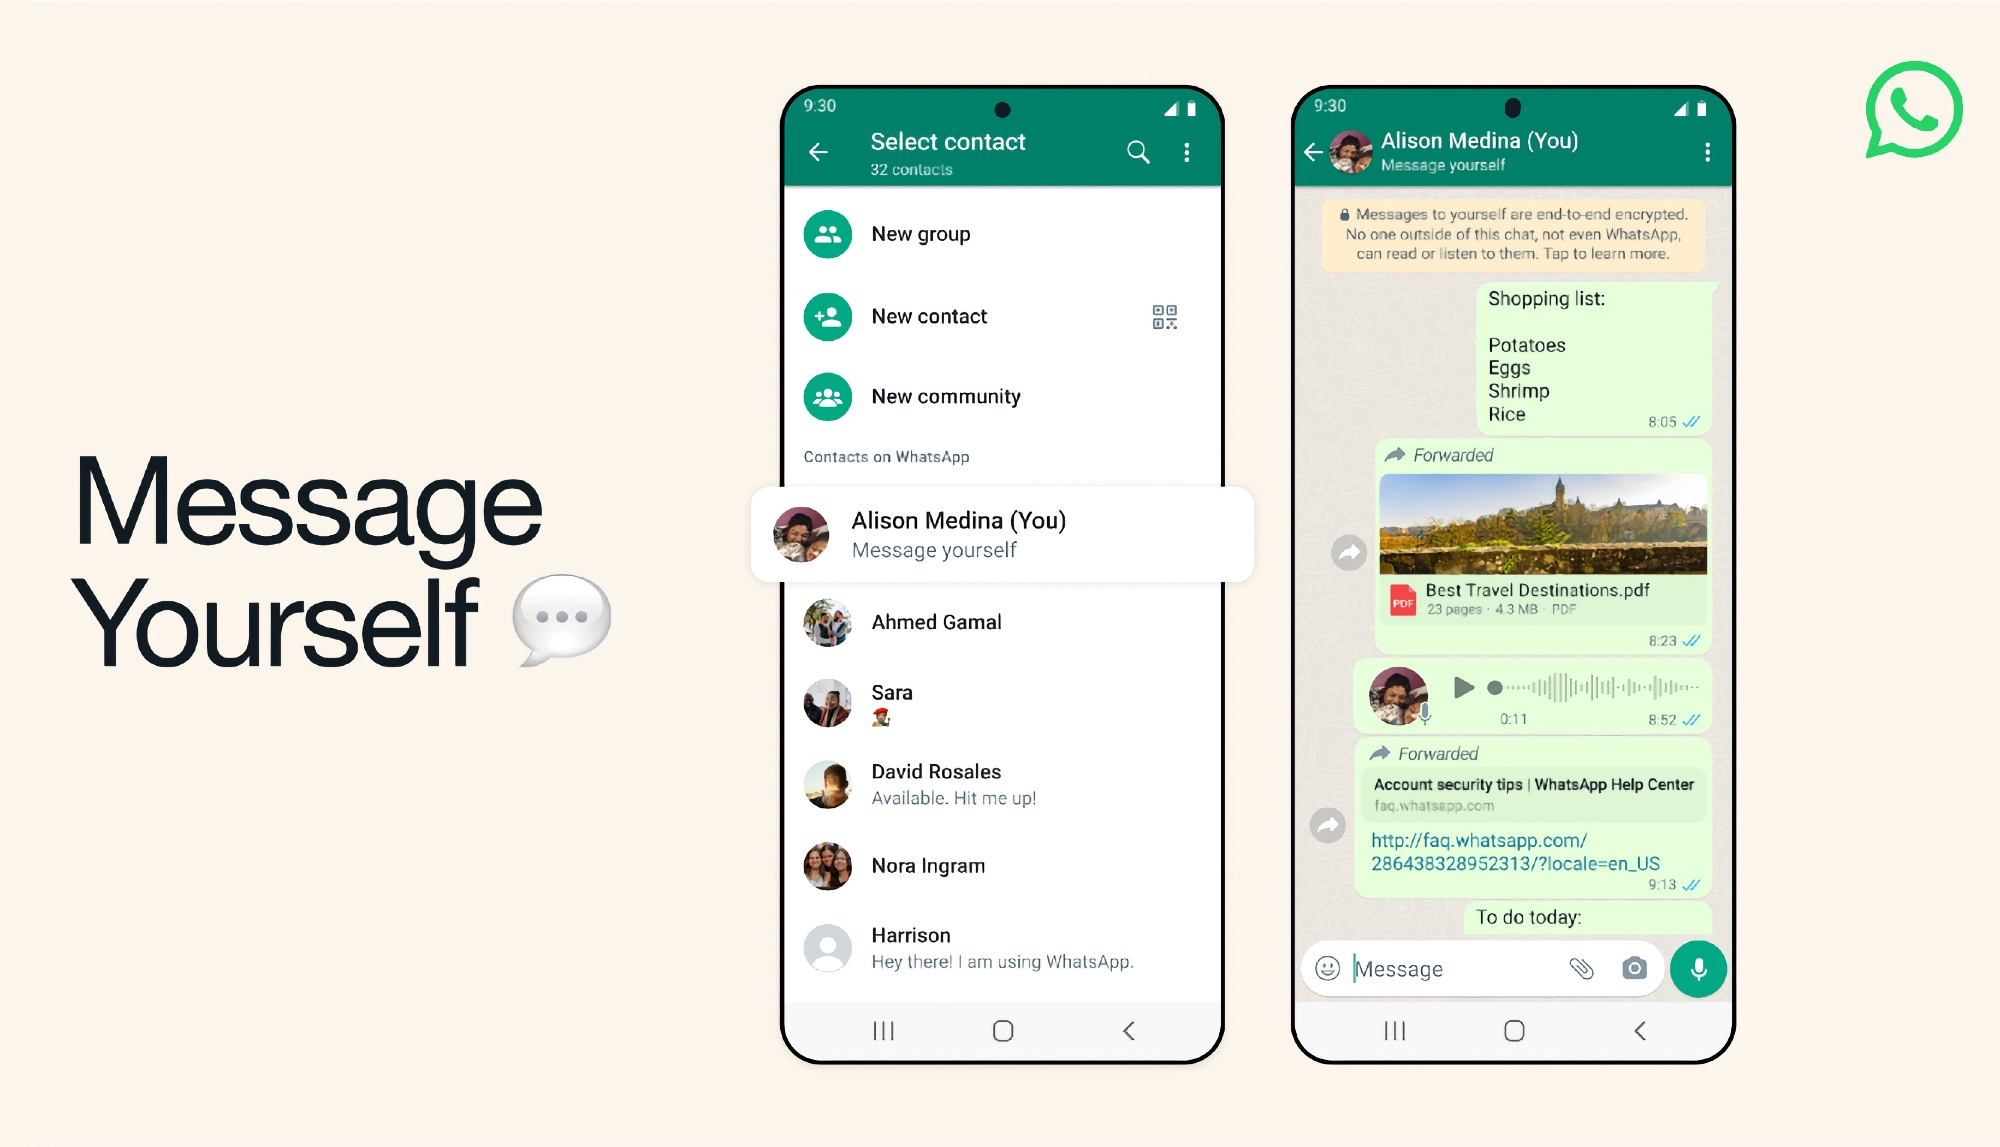 Podobnie jak Telegram i Viber: WhatsApp wprowadza funkcję Message Yourself, która pozwala na zapisywanie w aplikacji linków, notatek i plików